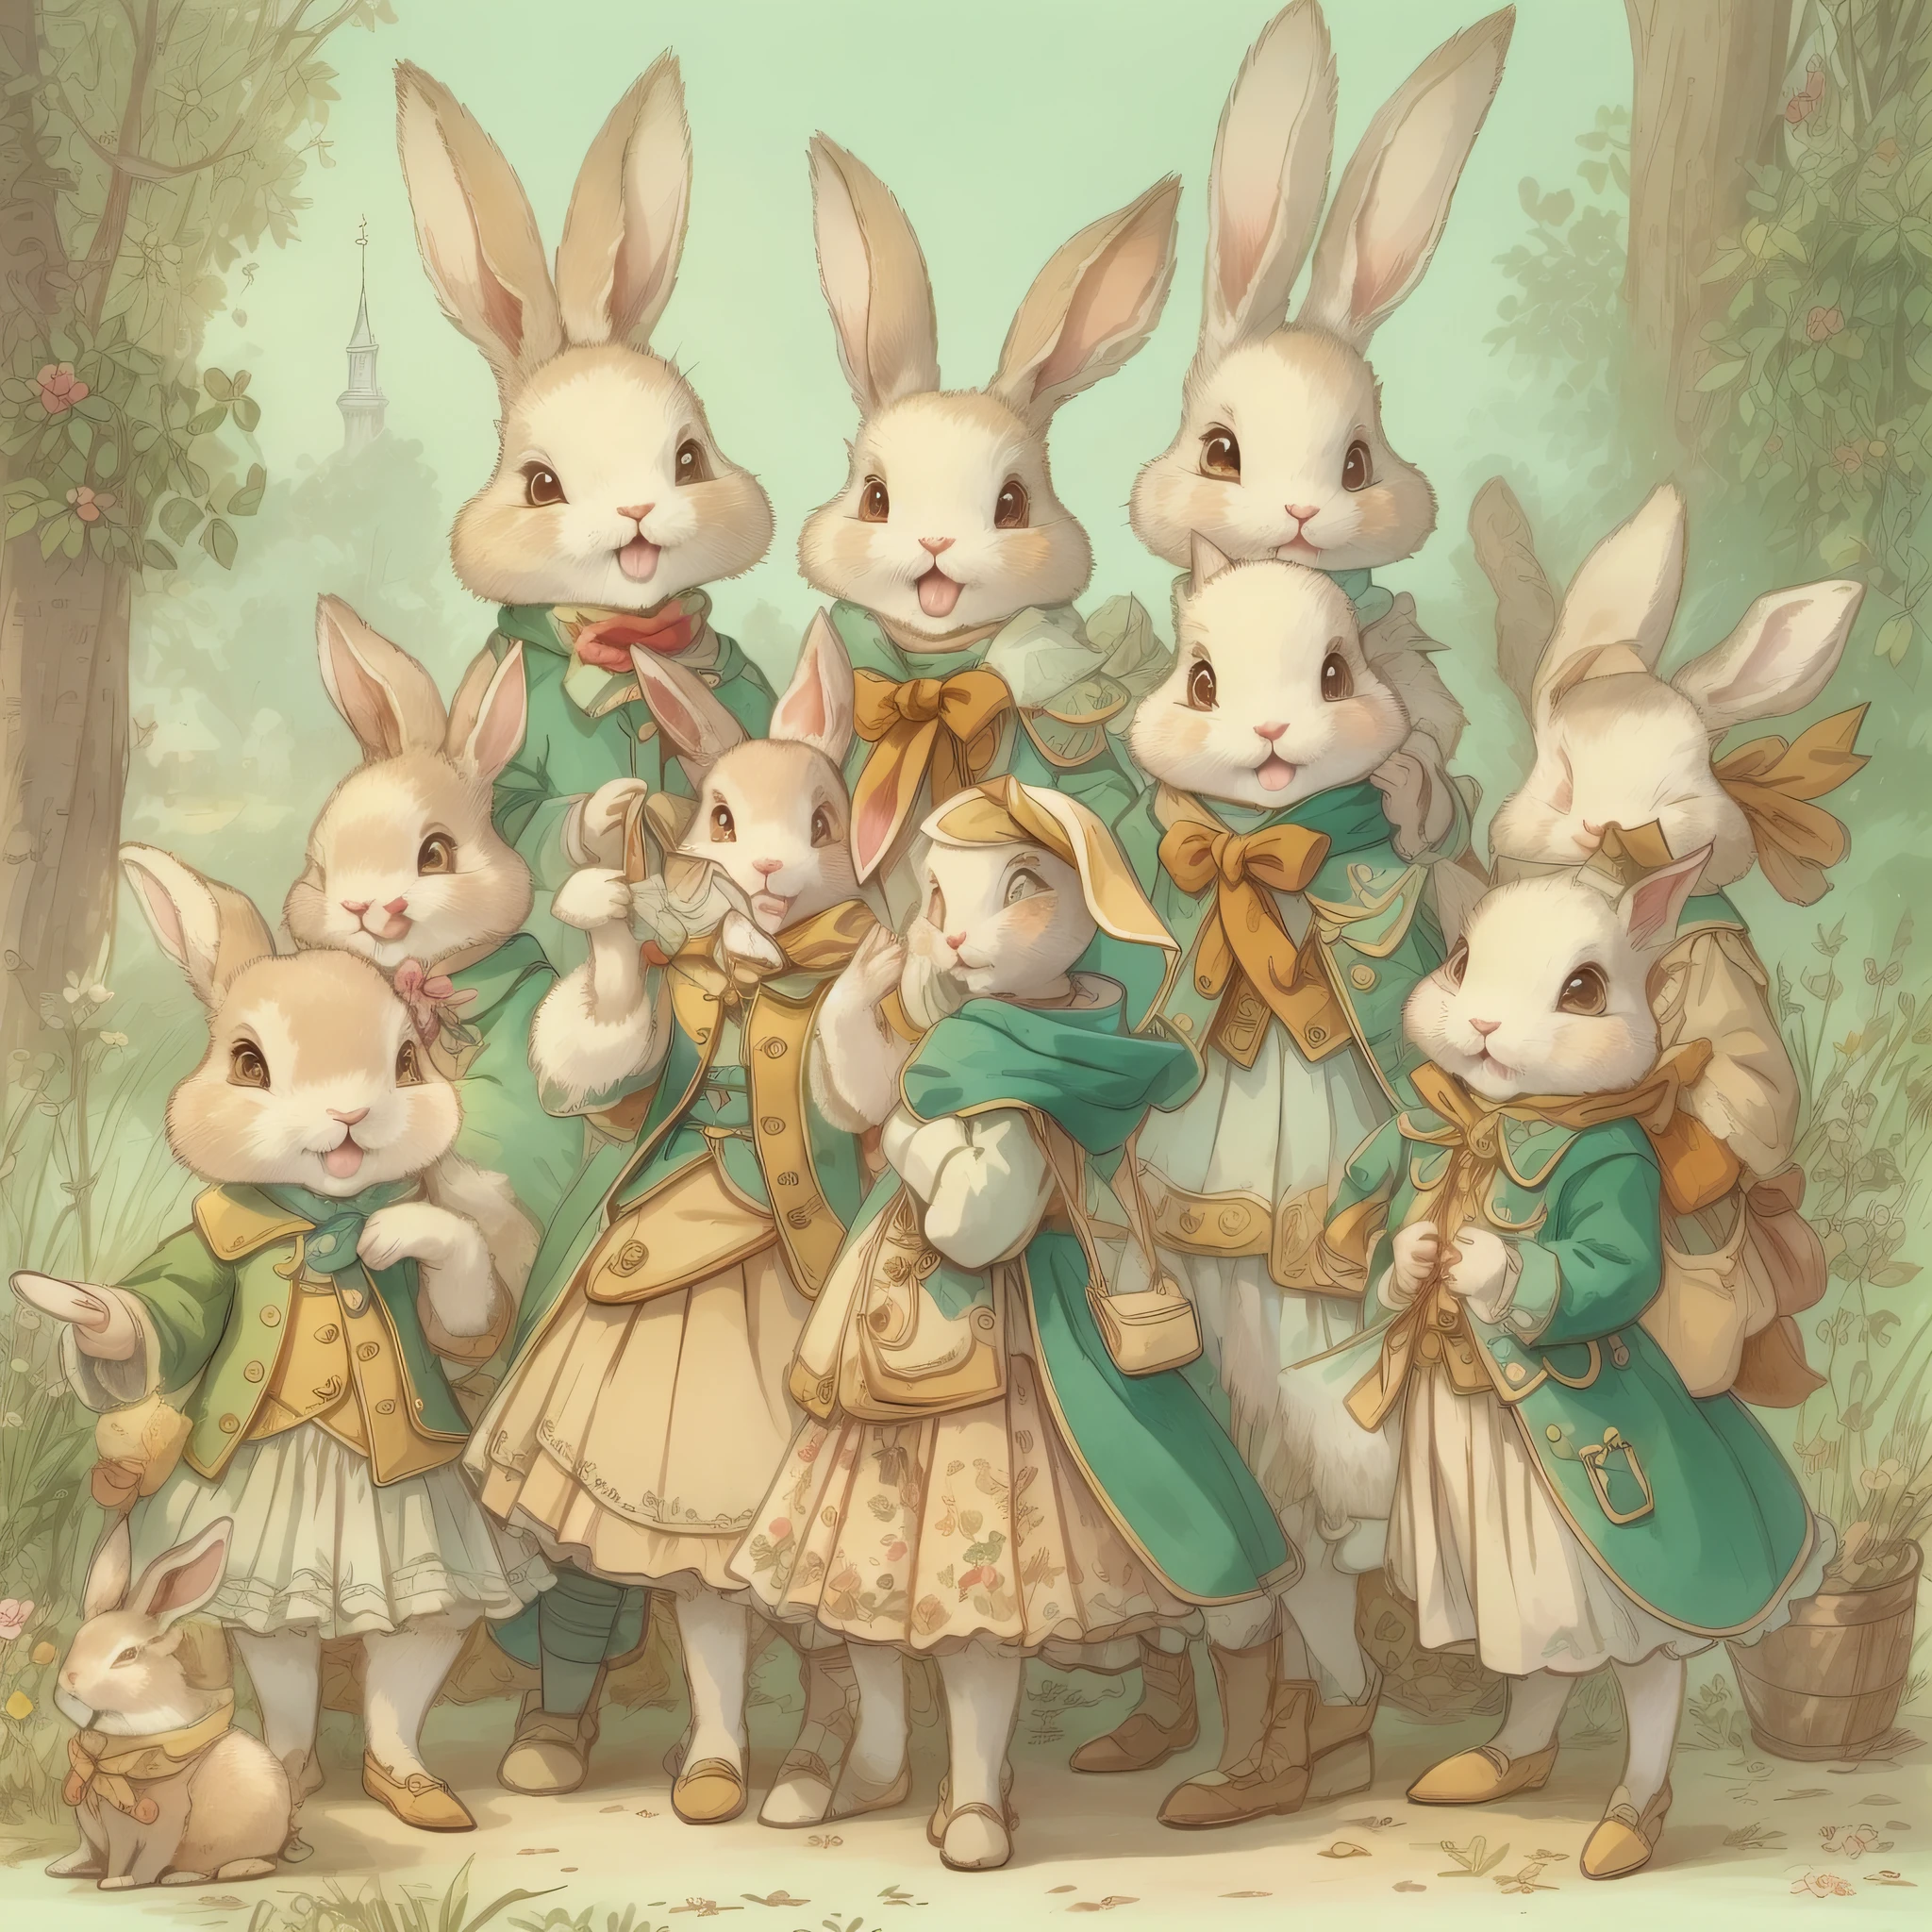 超高画质、超精致、角色设计图、全身像、多重姿势、多种面部表情、拟人化的可爱兔子、童话故事里的可爱人物、穿着外套的可爱兔子、18 世纪法国服装、缤纷的颜色、